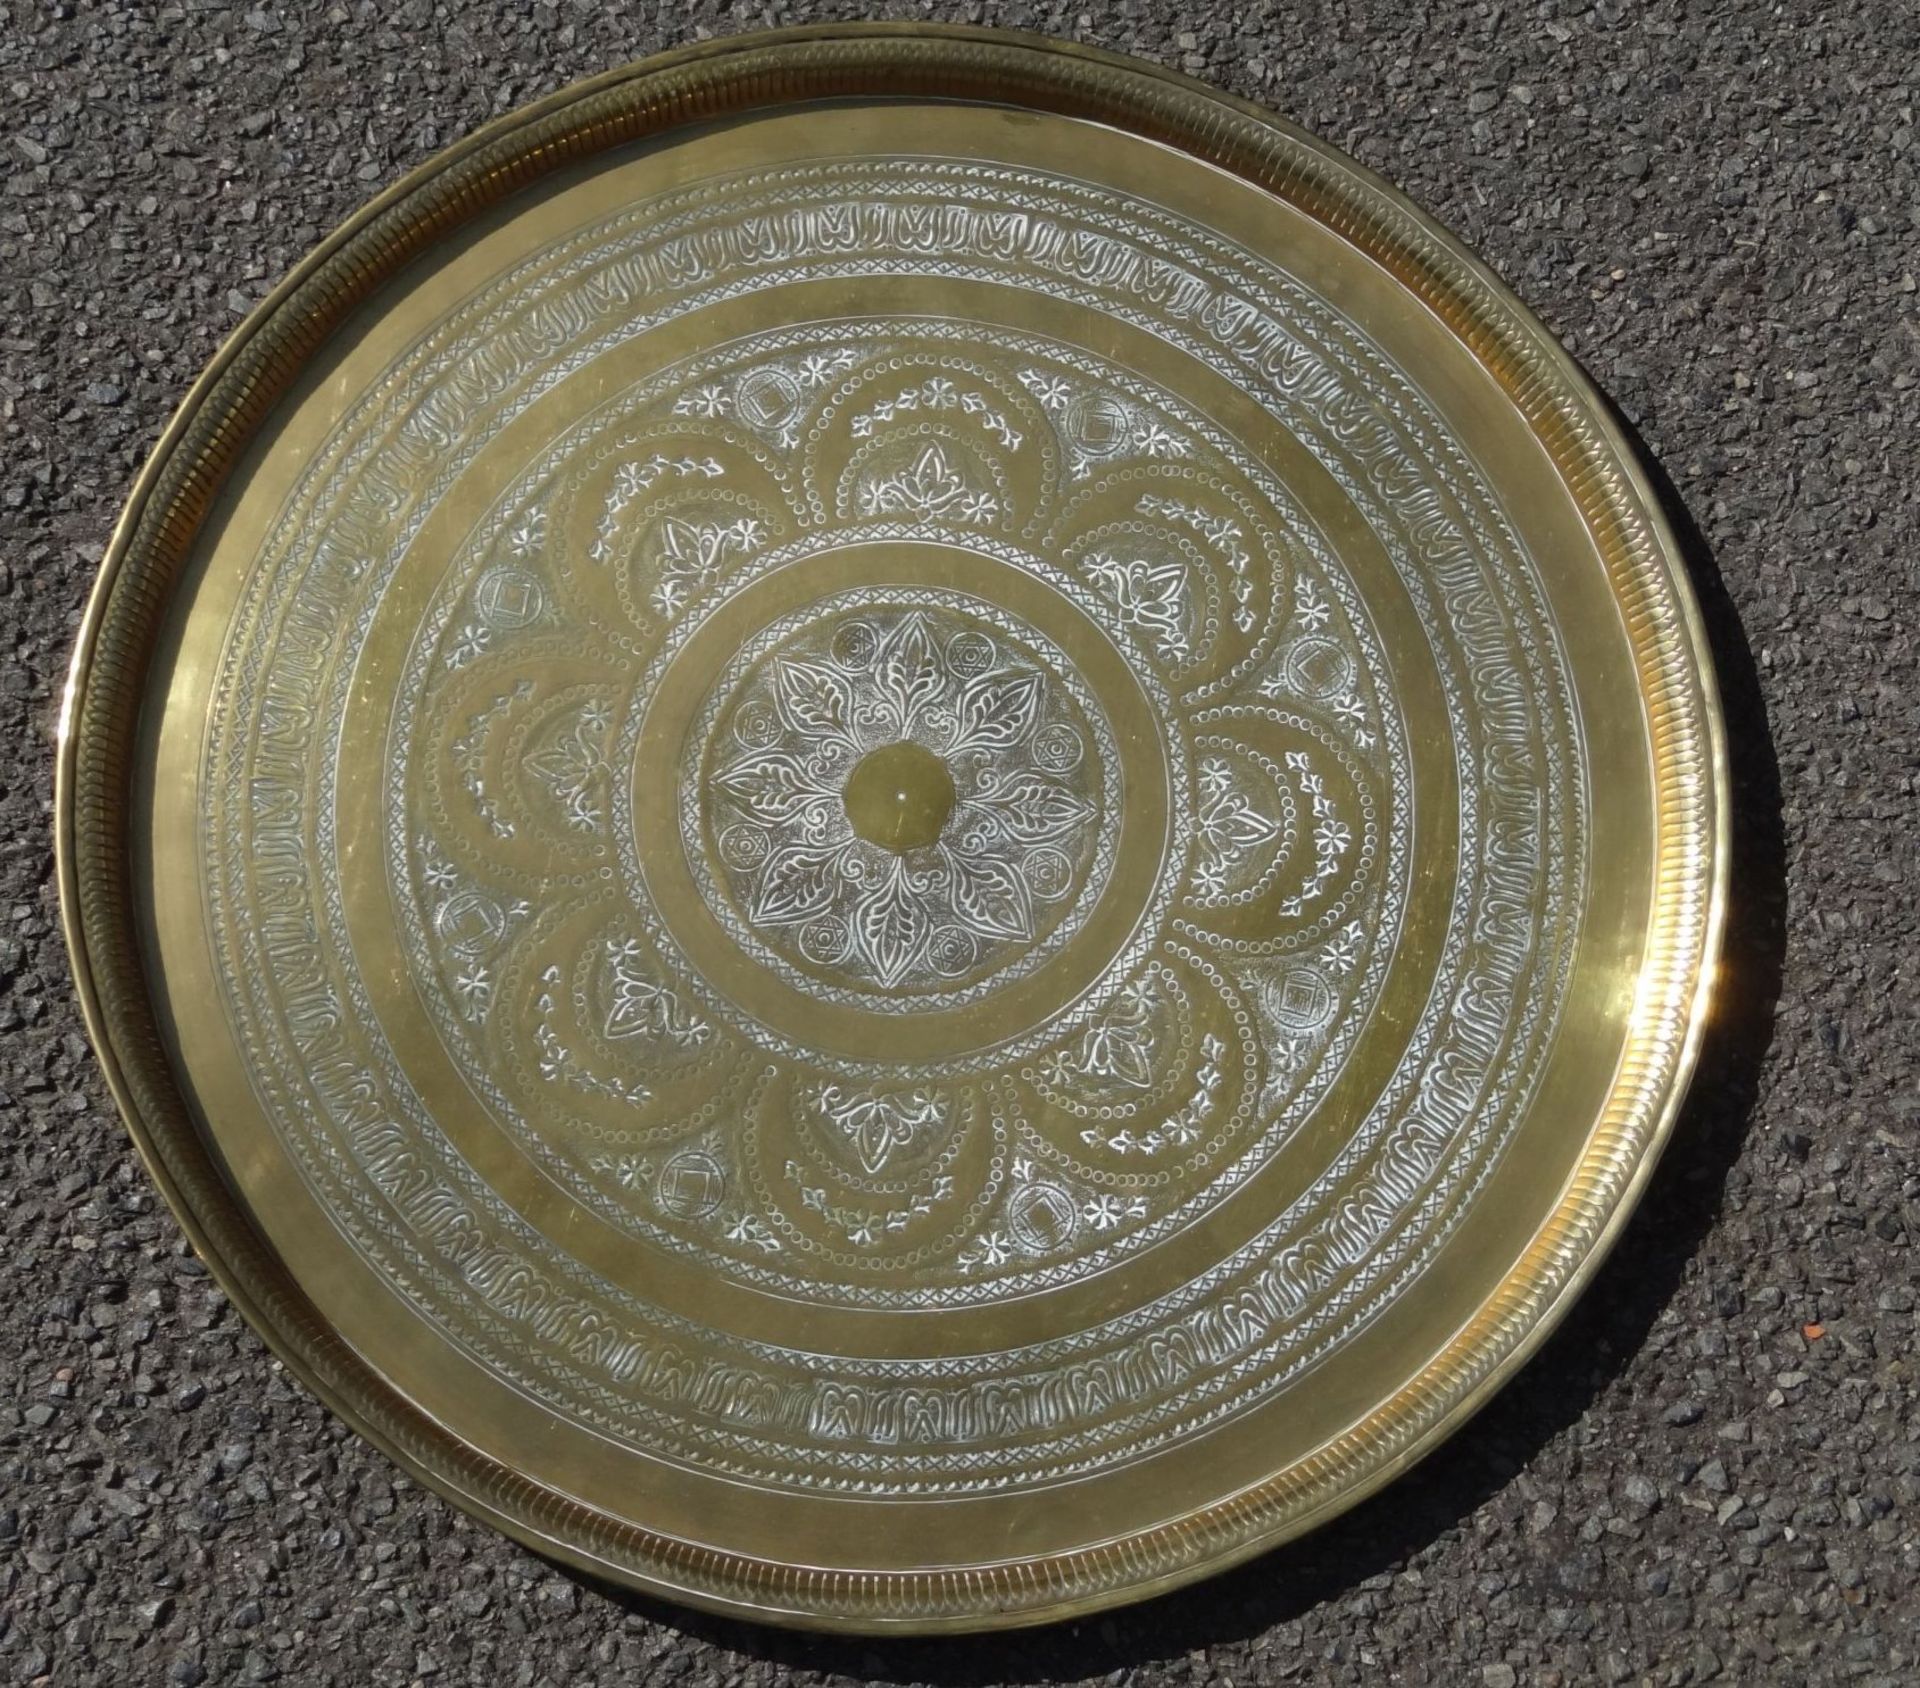 grosses massives rundes Tablett, Messing, wohl von Beduinentischchen, D-58 cm